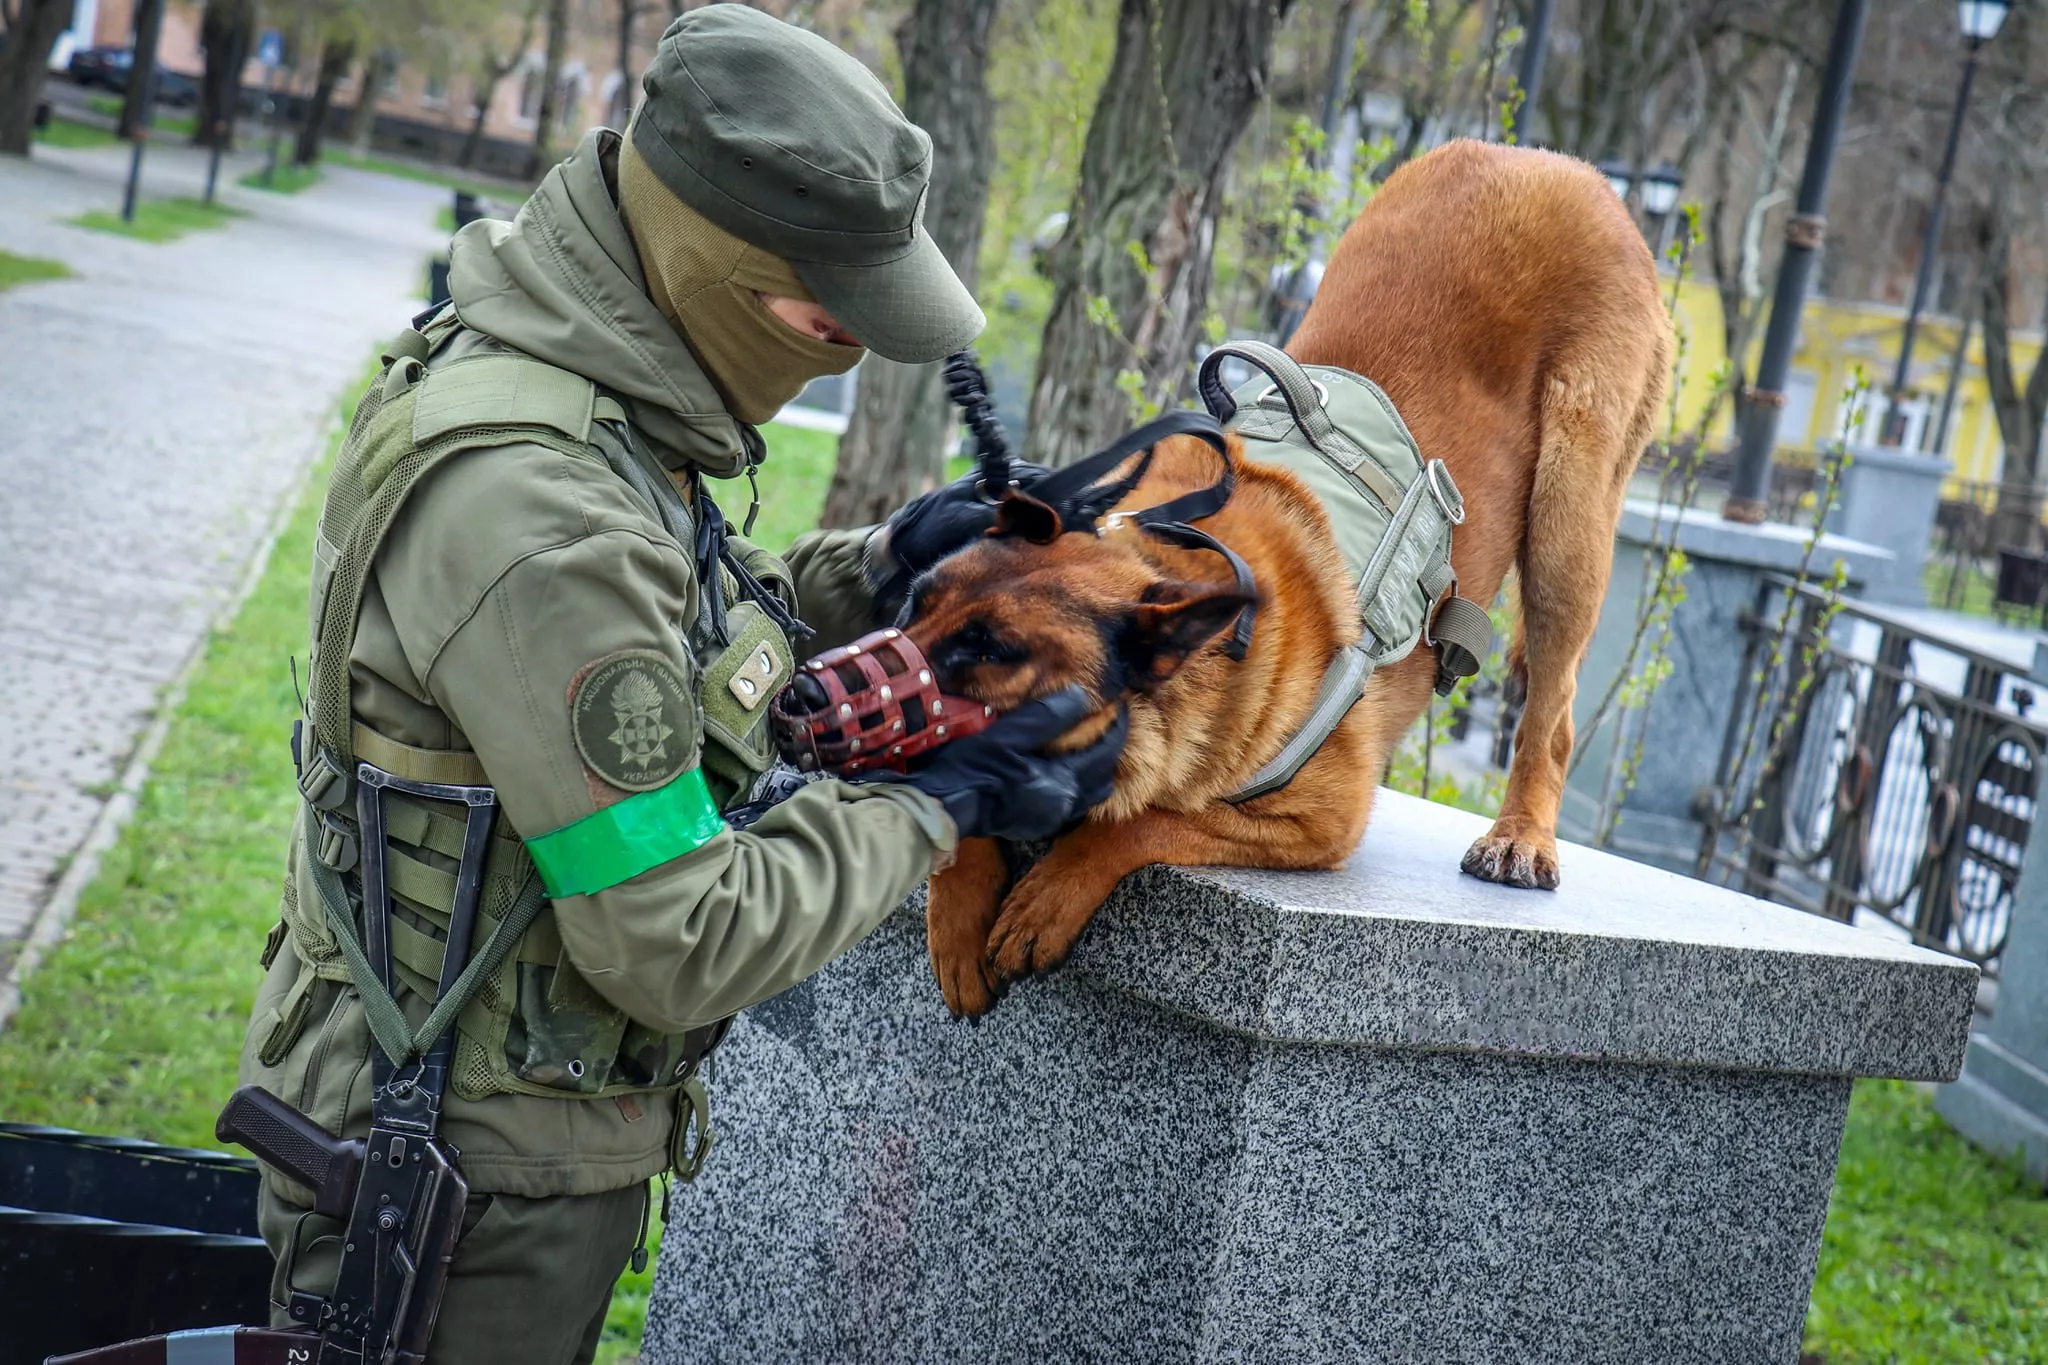 Собака умная, отличная, уже выучила украинский язык, говорят волонтеры, подразумевая, что Бакс выполняет команды на украинском